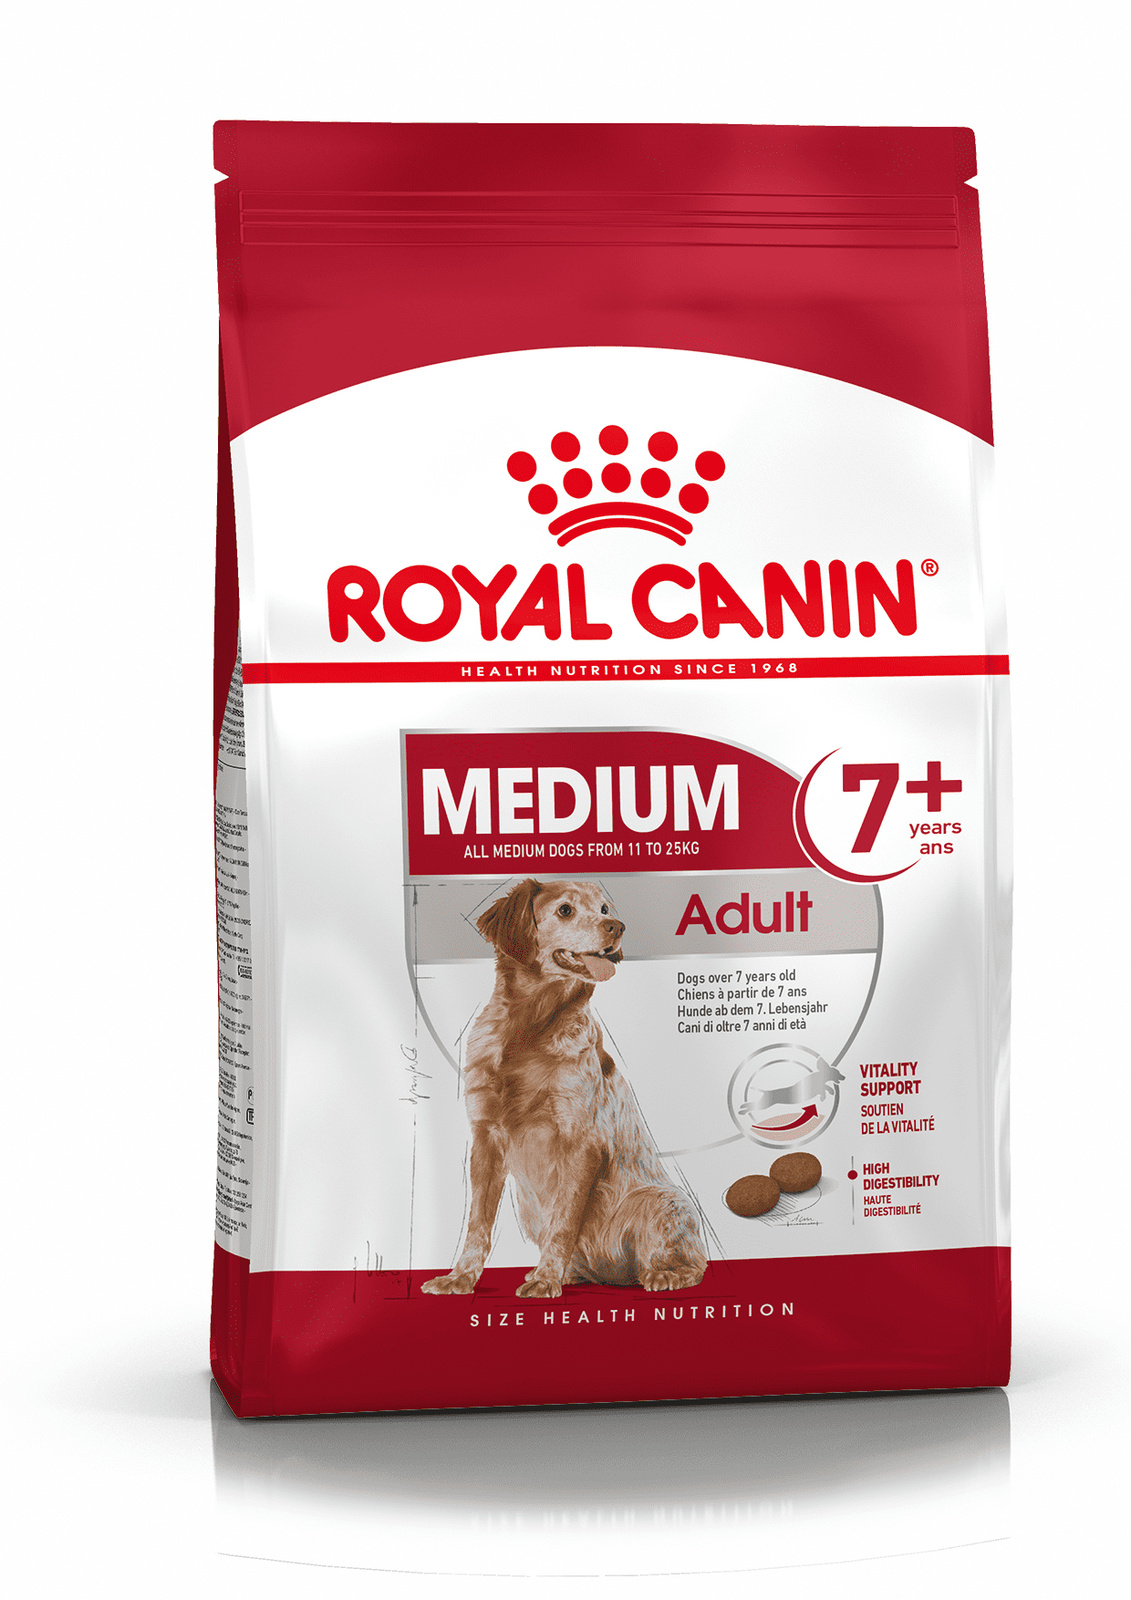 Royal Canin Корм Royal Canin корм для пожилых собак средних размеров: 11-25 кг, 7-10 лет (4 кг) royal canin medium adult 7 для пожилых собак средних пород старше 7 лет 4 кг х 4 шт